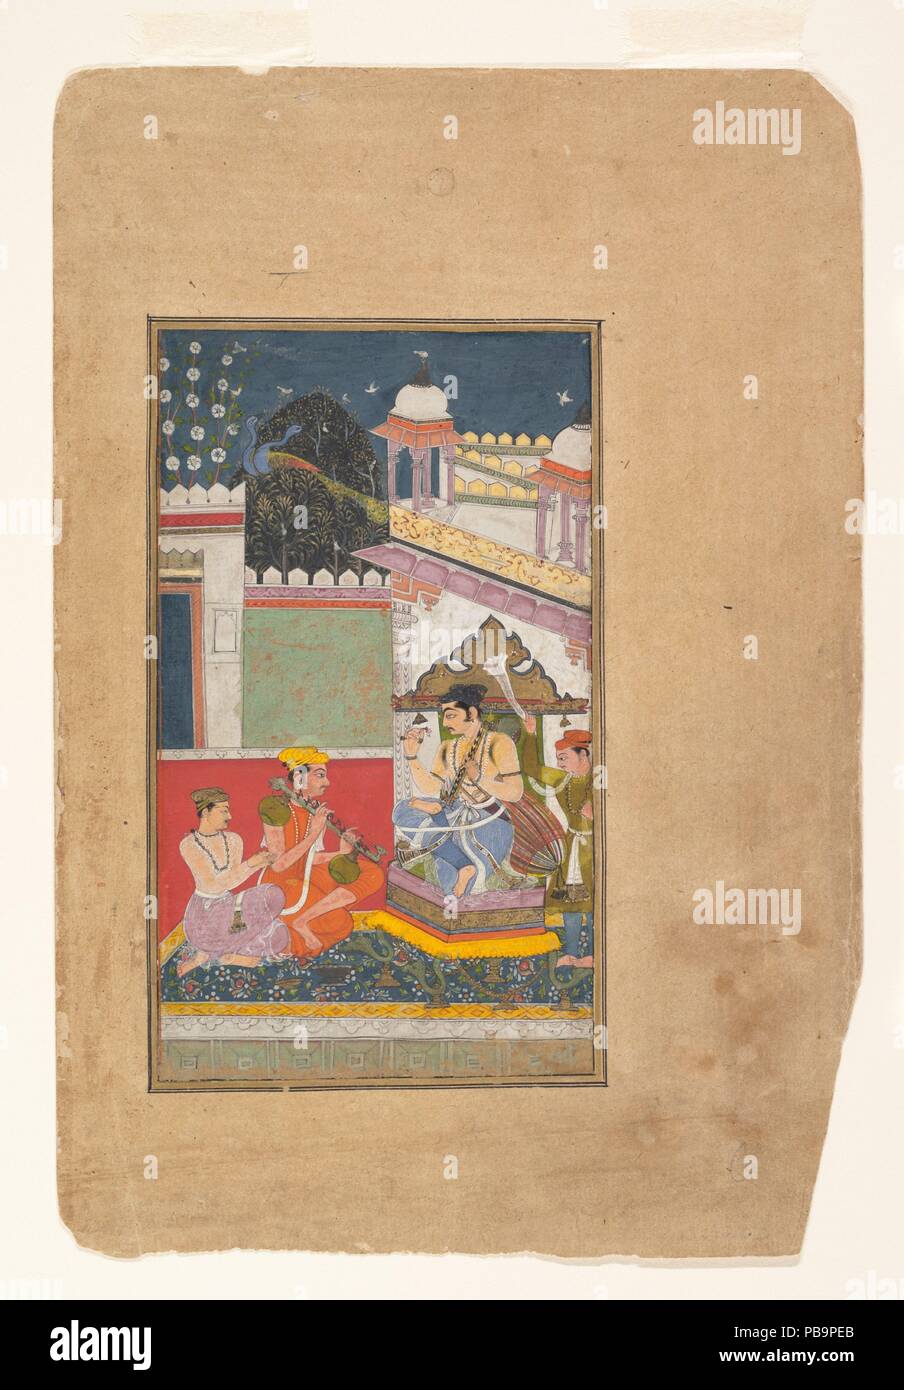 Shri Raga : Folio à partir d'une série ragamala (Guirlande de modes musicaux). Culture : l'Inde (Rajasthan, India). Dimensions : 8 1/4 x 4 3/4 in. (20,9 x 12,1 cm). Date : milieu du 17e siècle. Ici la règle est vu jouer a rudra vina, accompagné de deux musiciens. Cette rare représentation de la règle comme artiste apparaît dans les peintures des Bundi Kota et tribunaux. Le travail fait aussi référence à la récolte d'automne festivals, un moment de détente et de fête. L'architecture complexe et le bijou-comme traitement de l'arbre en fleurs sont typiques de Bundi la peinture. Musée : Metropolitan Museum of Art, New York, U Banque D'Images